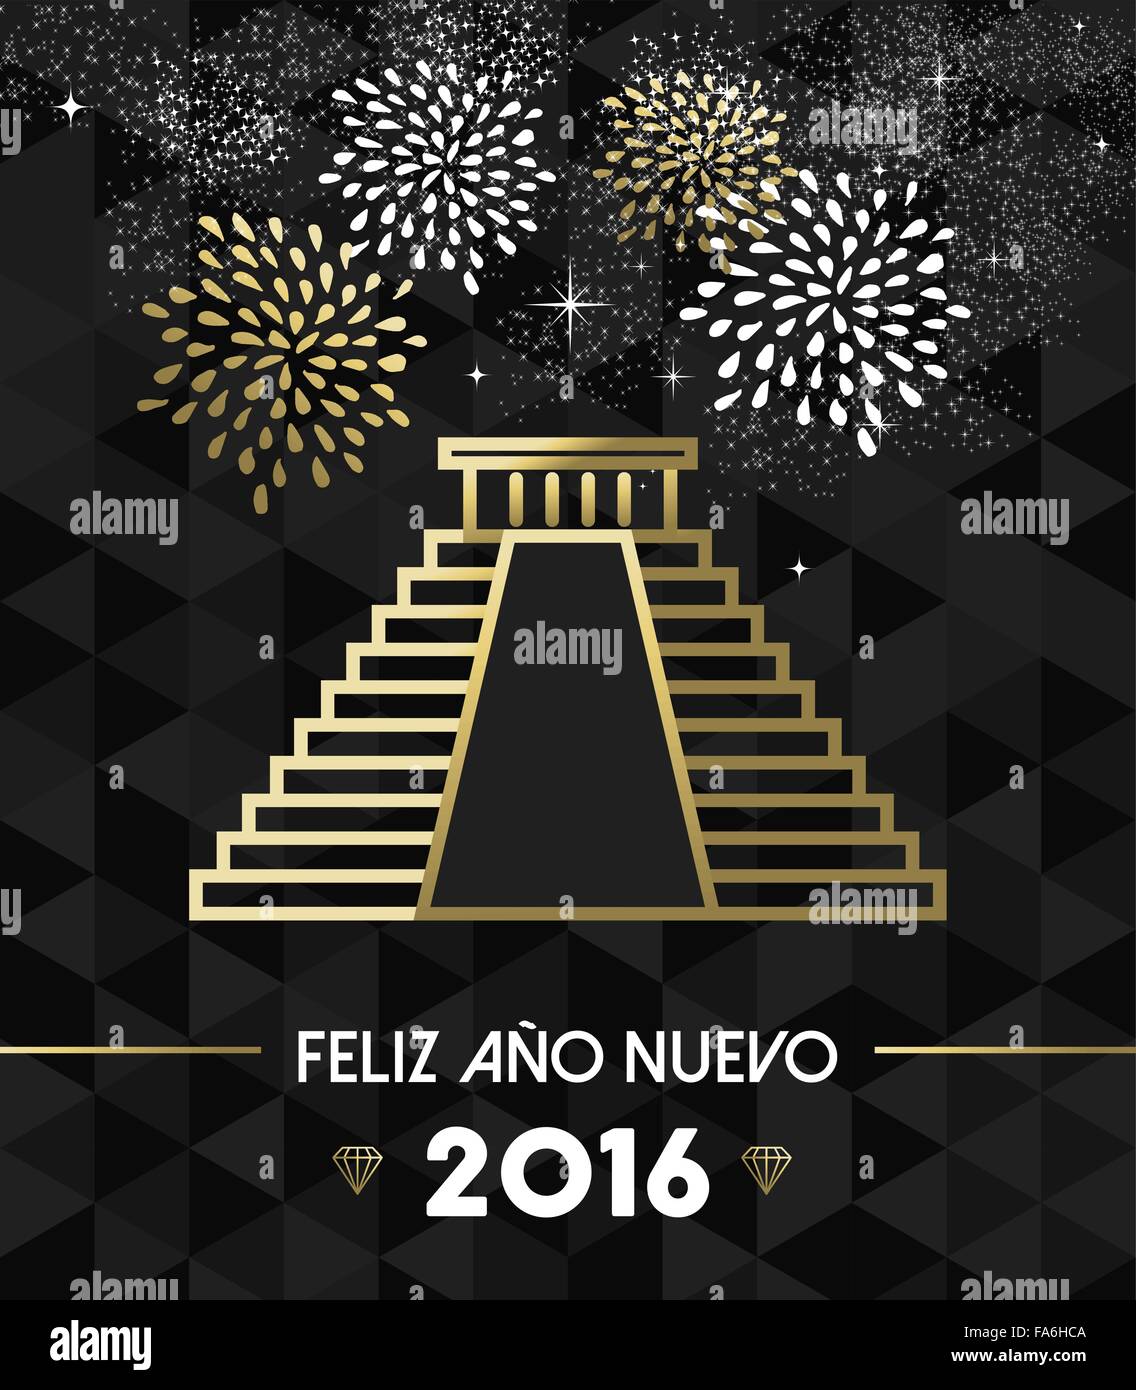 Felice Anno Nuovo 2016 Messico biglietto di auguri con punto di riferimento storico Chichen Itza piramide in oro di stile di contorno. EPS10 vettore. Illustrazione Vettoriale